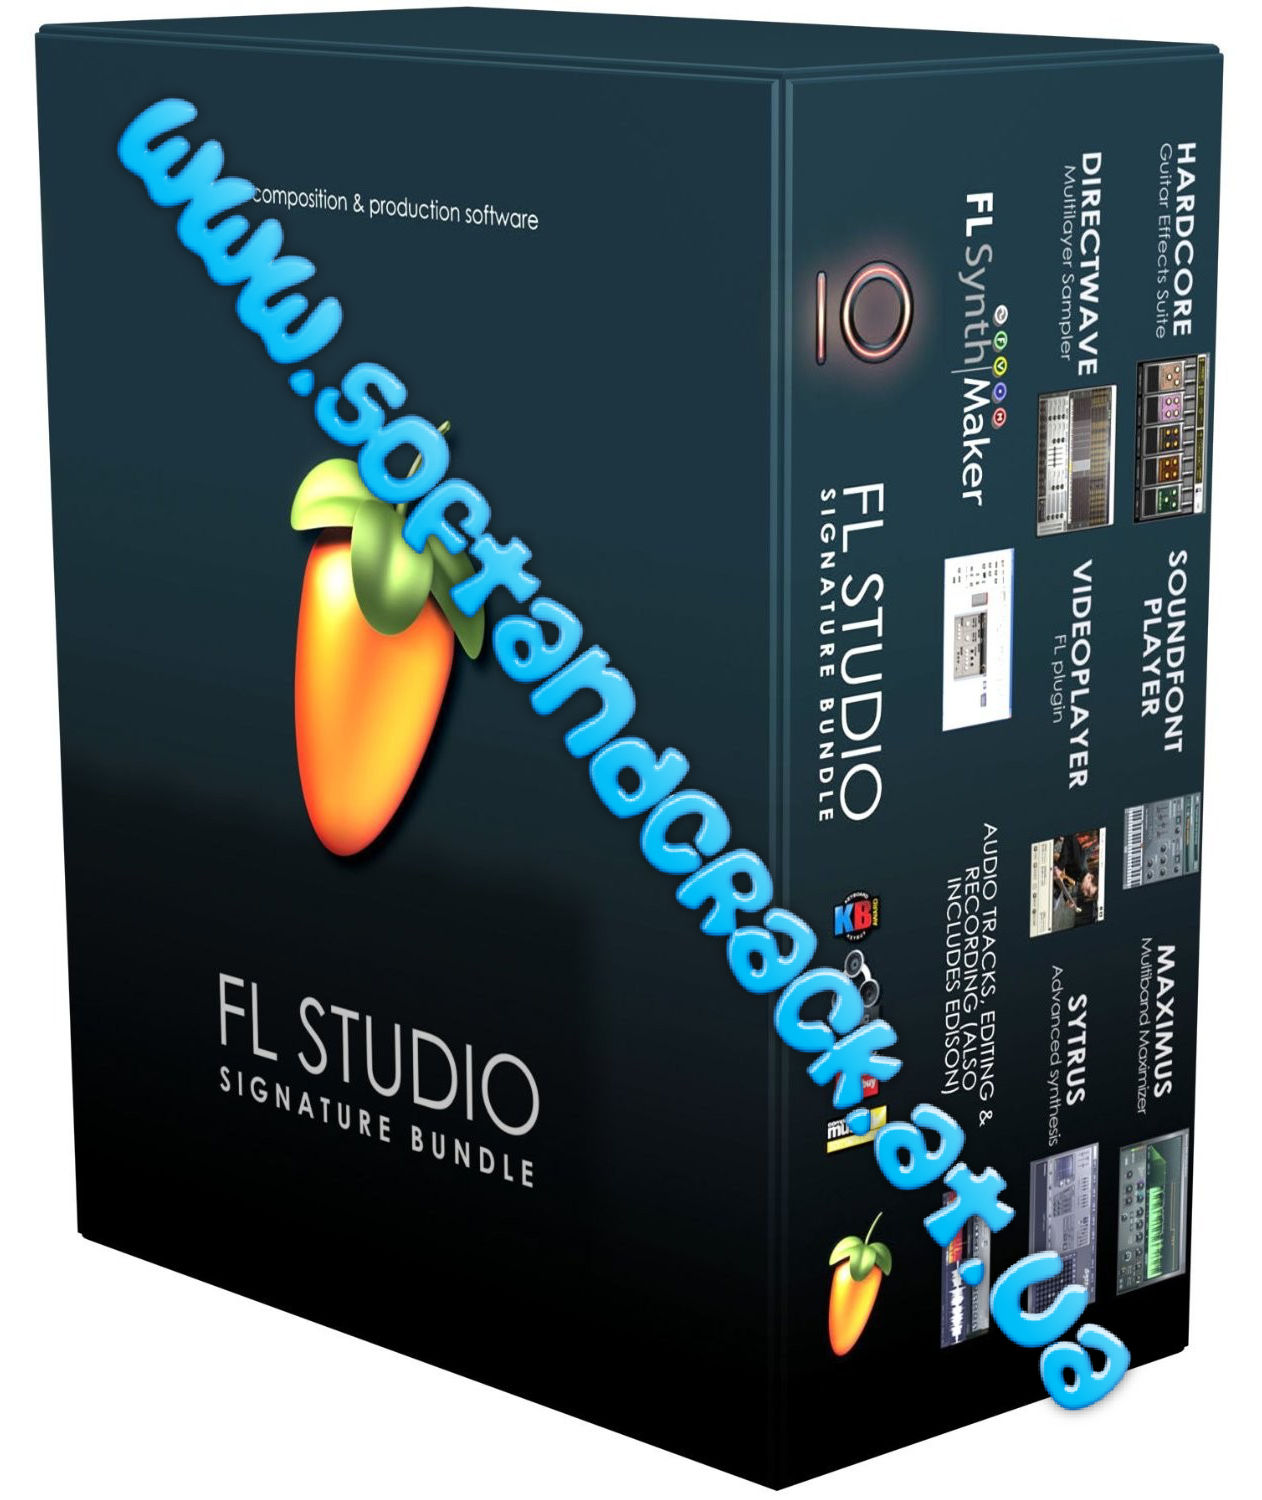 FL Studio 10 Signature Bundle